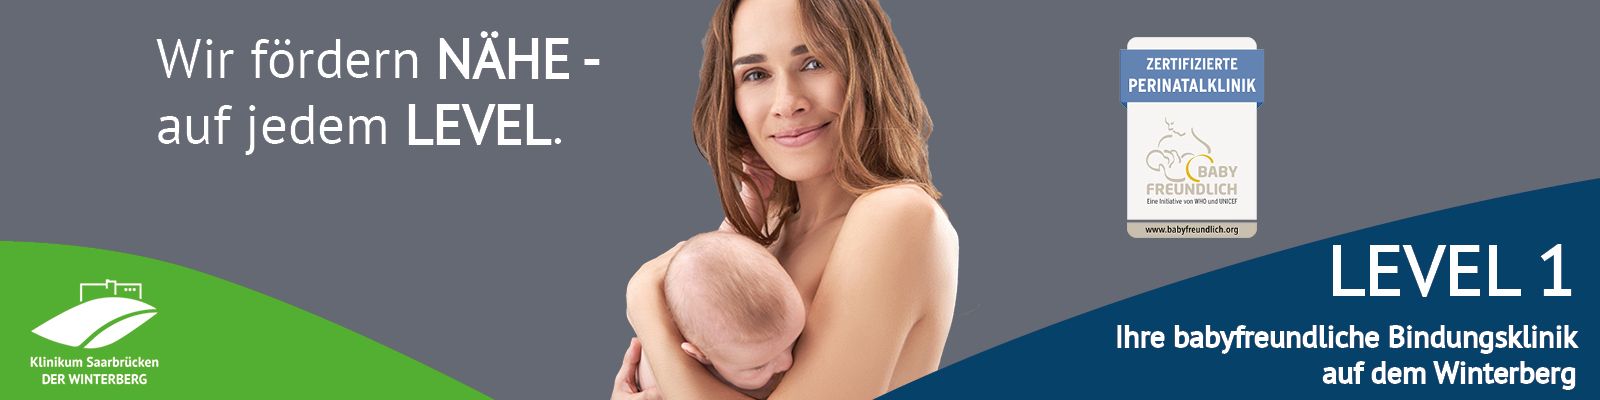 Mutter mit Baby: Klinikum Saarbrücken – LEVEL 1 – Deine babyfreundliche Bindungsklinik auf dem Winterberg: Wir fördern NÄHE. Auf jedem LEVEL. Slider_Level1_NaeheaufjdLevel.jpg